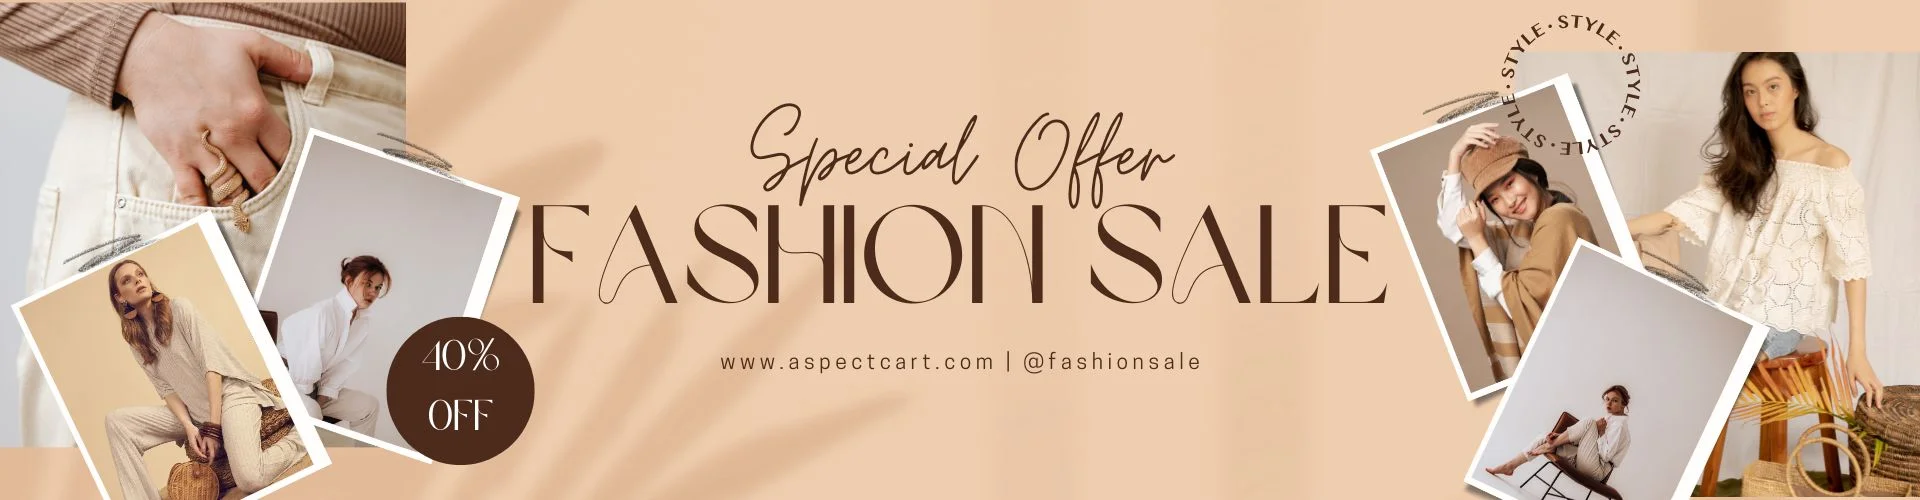 Banner de oferta especial para uma loja de moda online